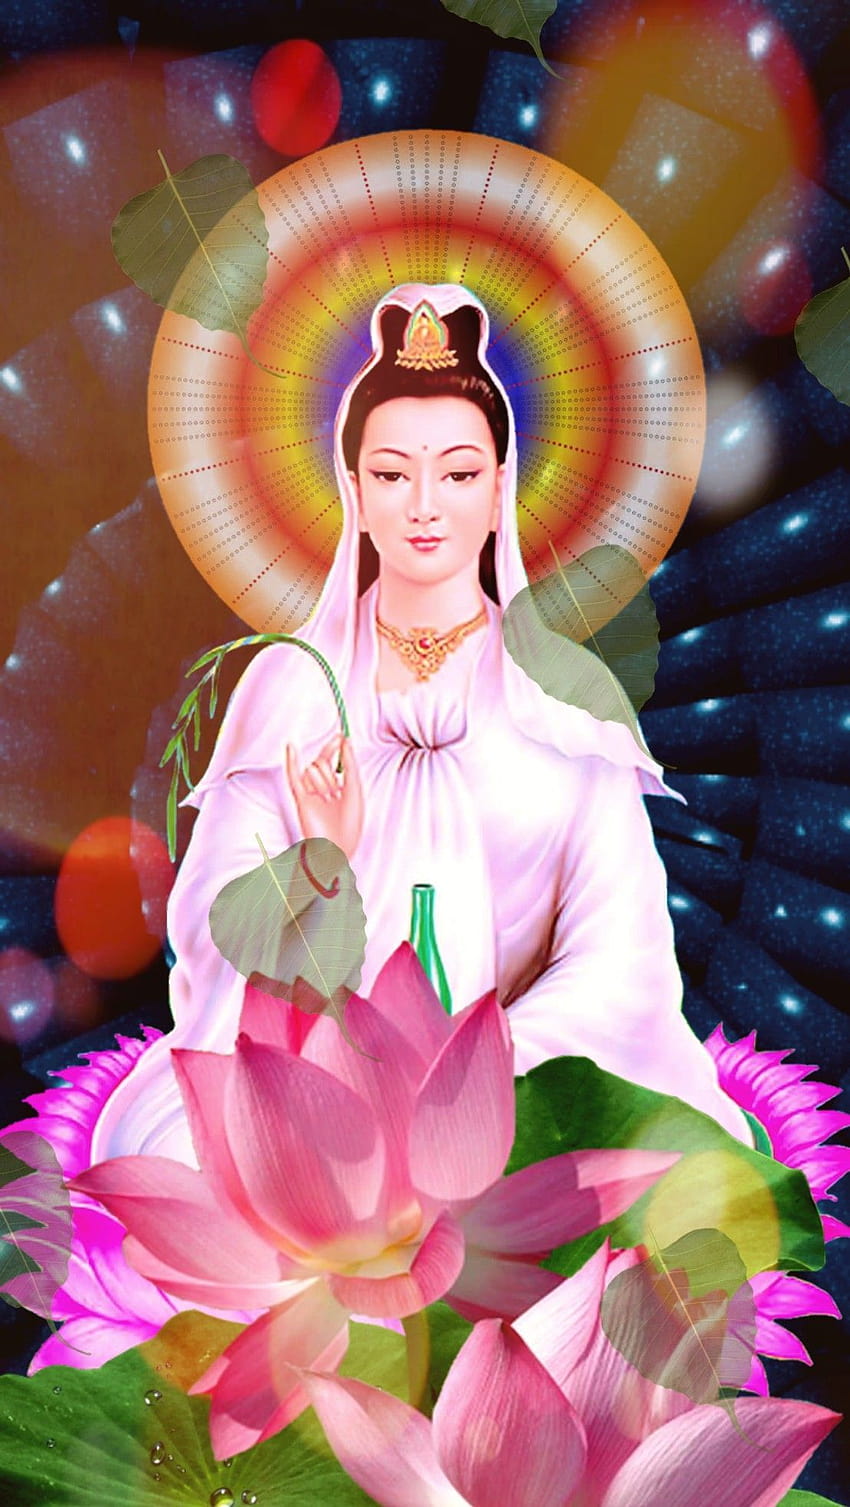 Guānshìyīn Púsà là vị thần Quan Thế Âm được nhắc đến trong nhiều tín ngưỡng, đặc biệt là Phật giáo. Hãy xem hình ảnh cùng tên để cảm nhận sự thiêng liêng, tình yêu thương vô bờ bến và sức mạnh bảo hộ của Quan Thế Âm Bồ Tát.